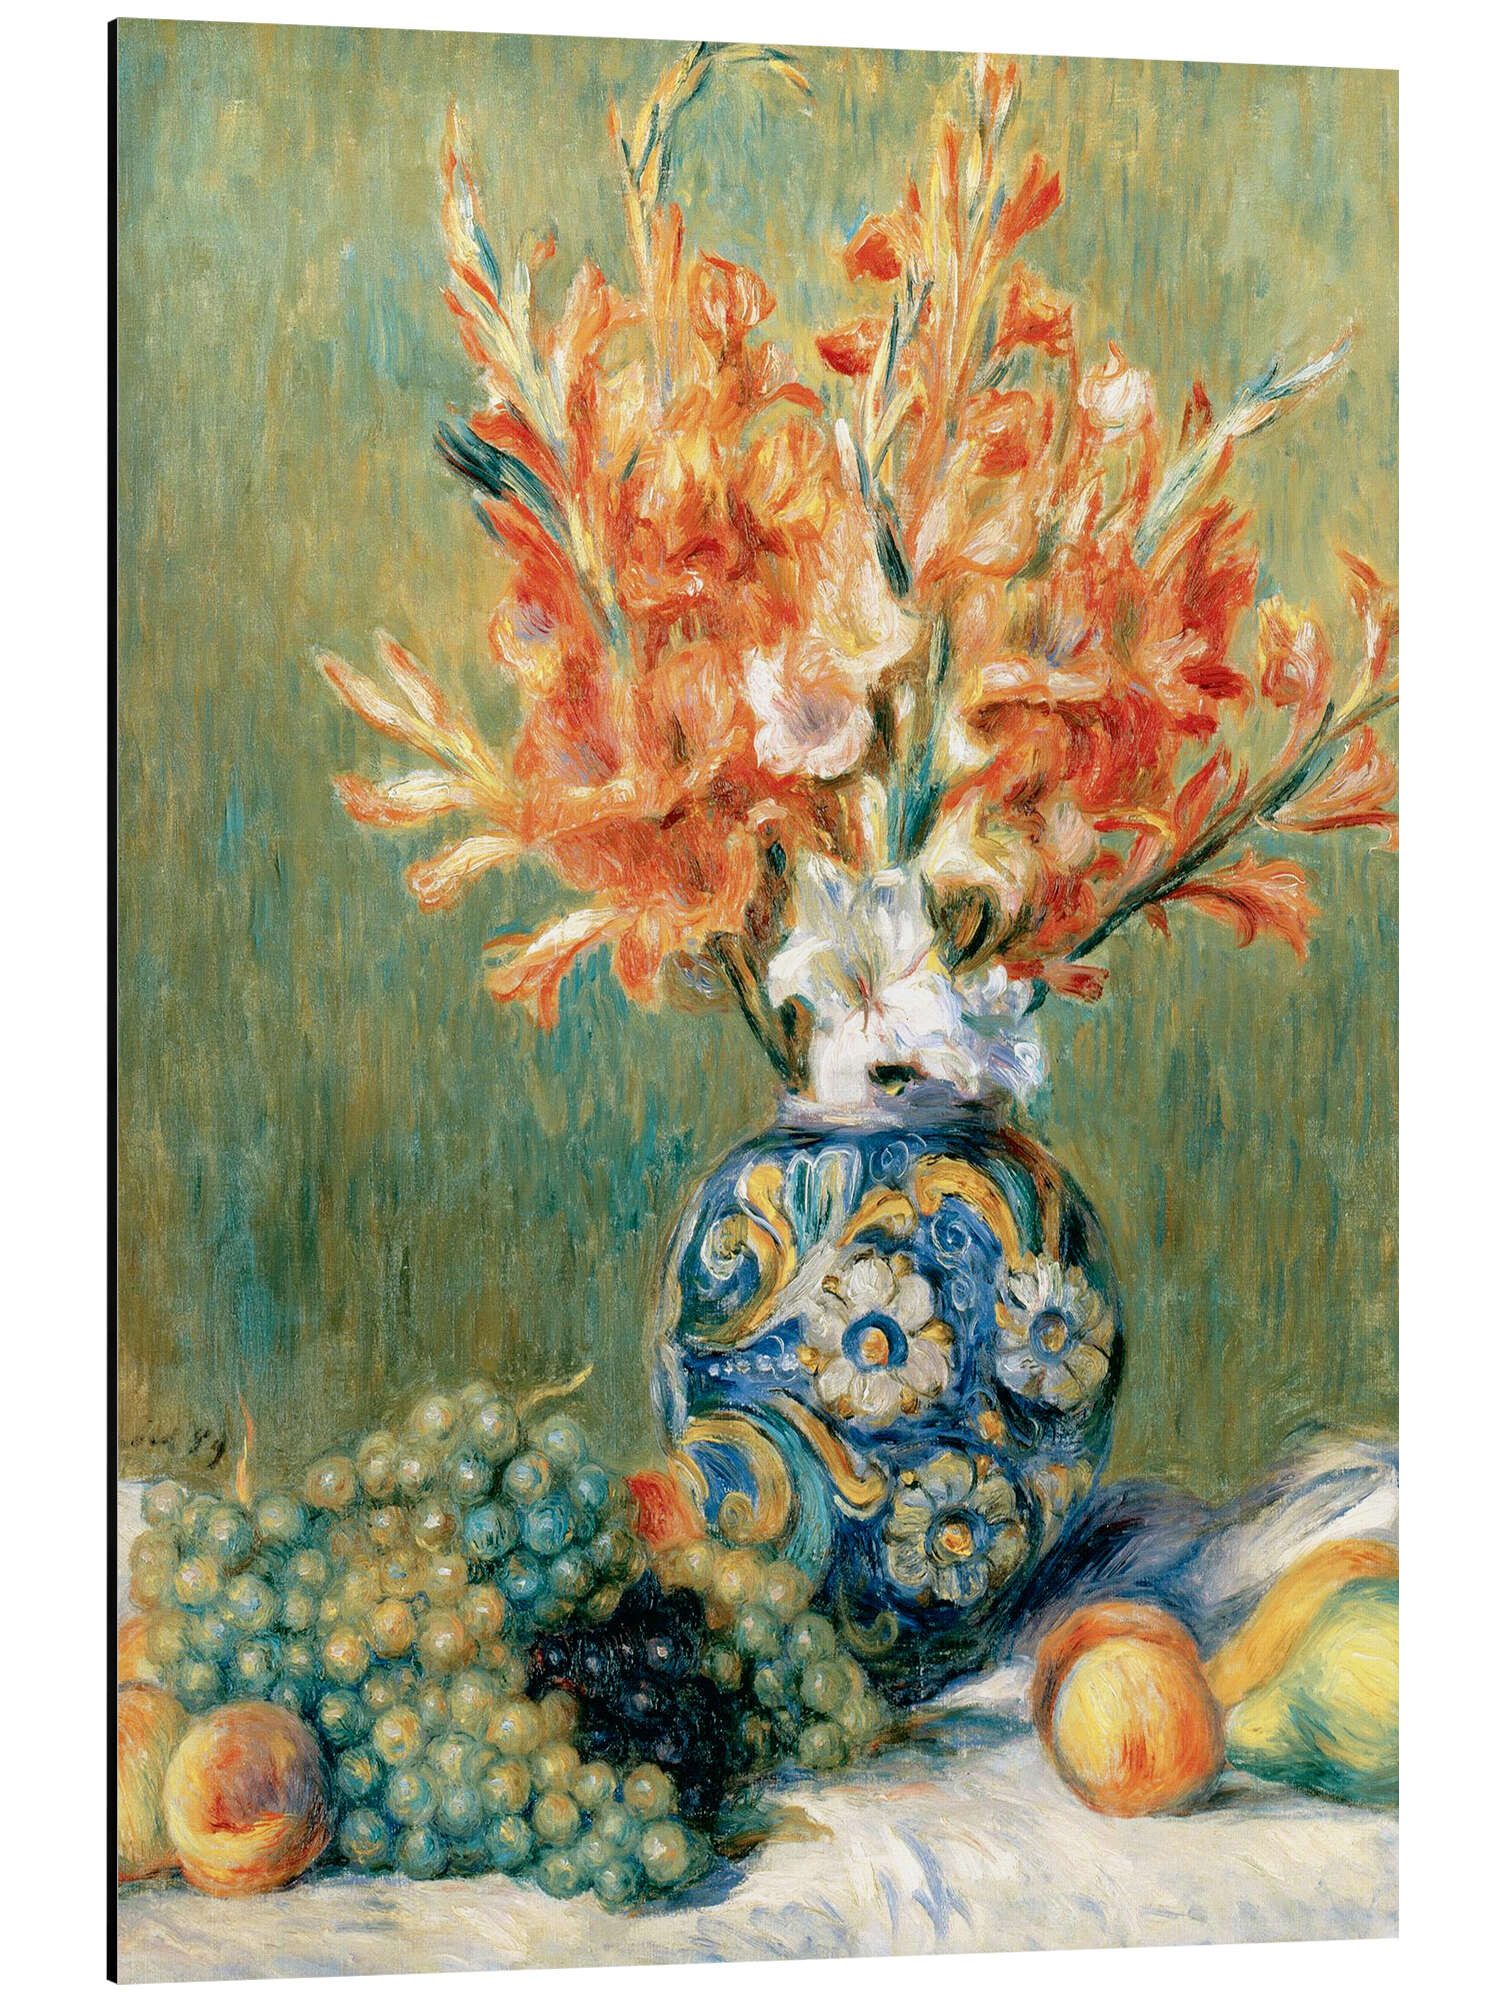 Posterlounge Alu-Dibond-Druck Pierre-Auguste Renoir, Stillleben mit Obst und Blumen, Malerei